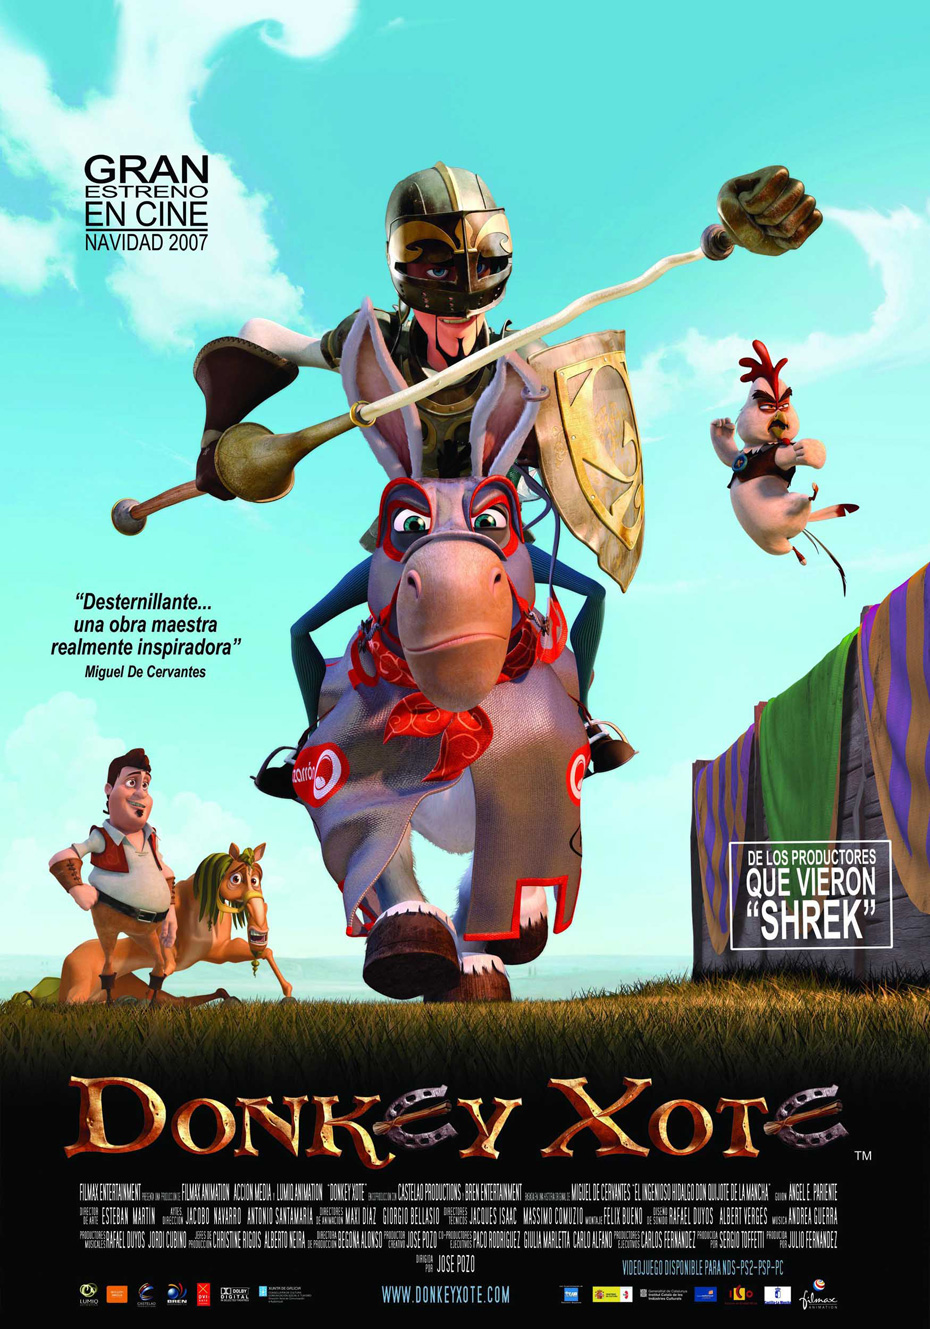 Donkey Xote movie